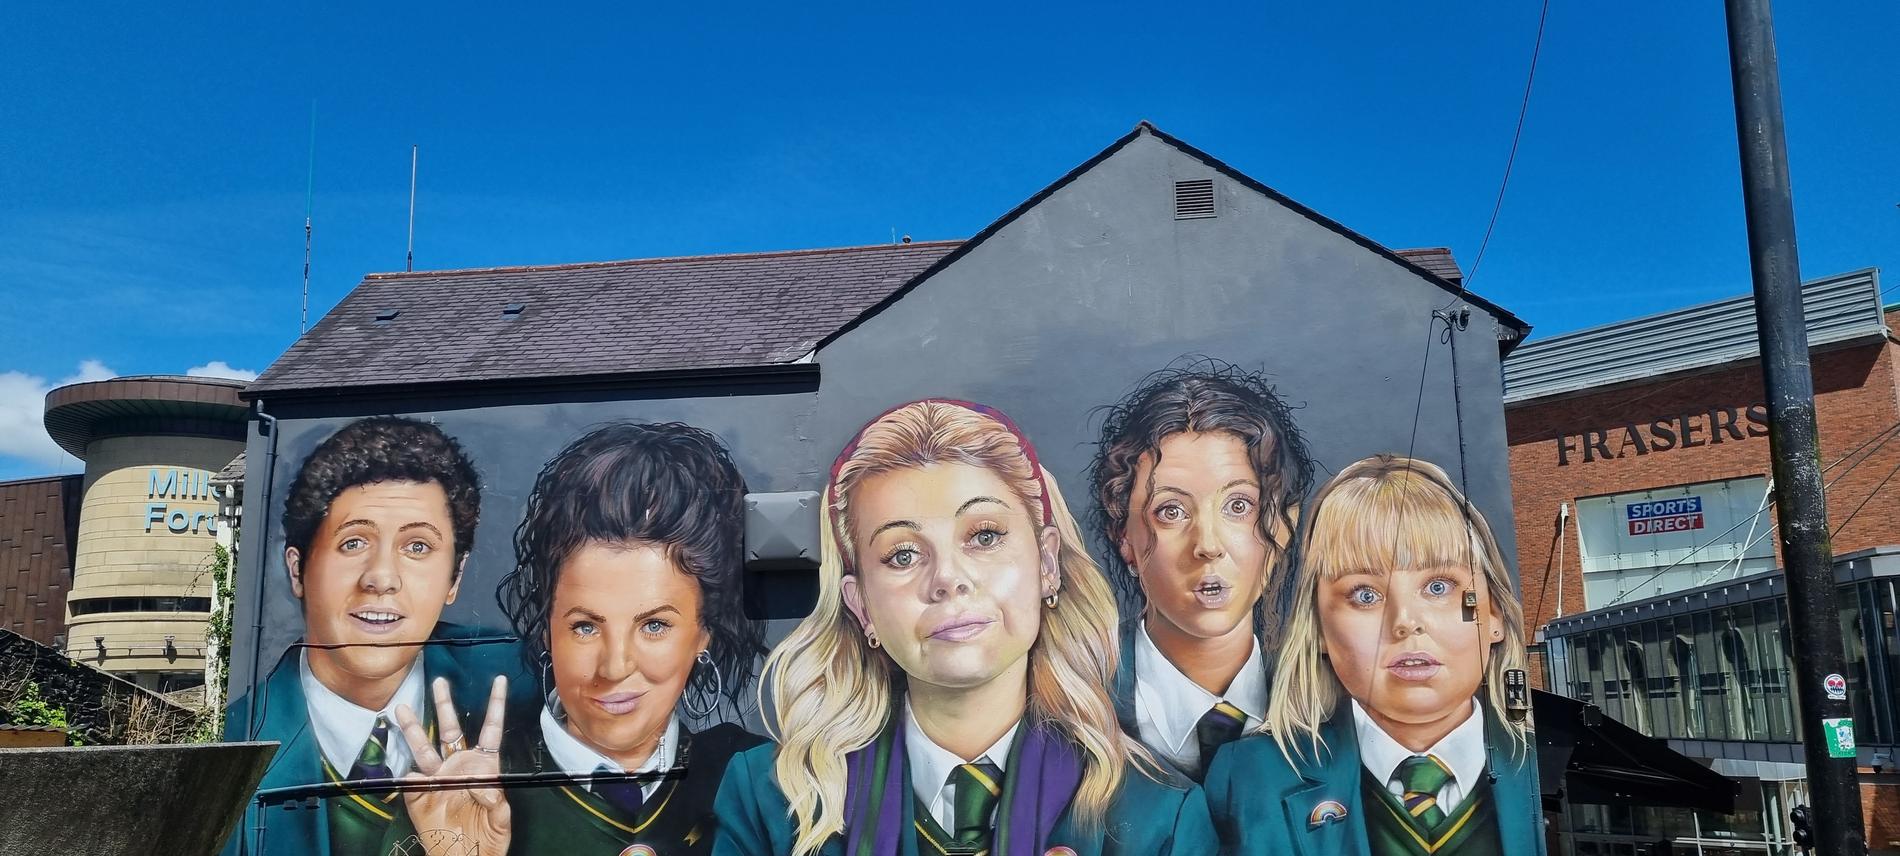 Derry Girls syns som en stor muralmålning mitt i staden.